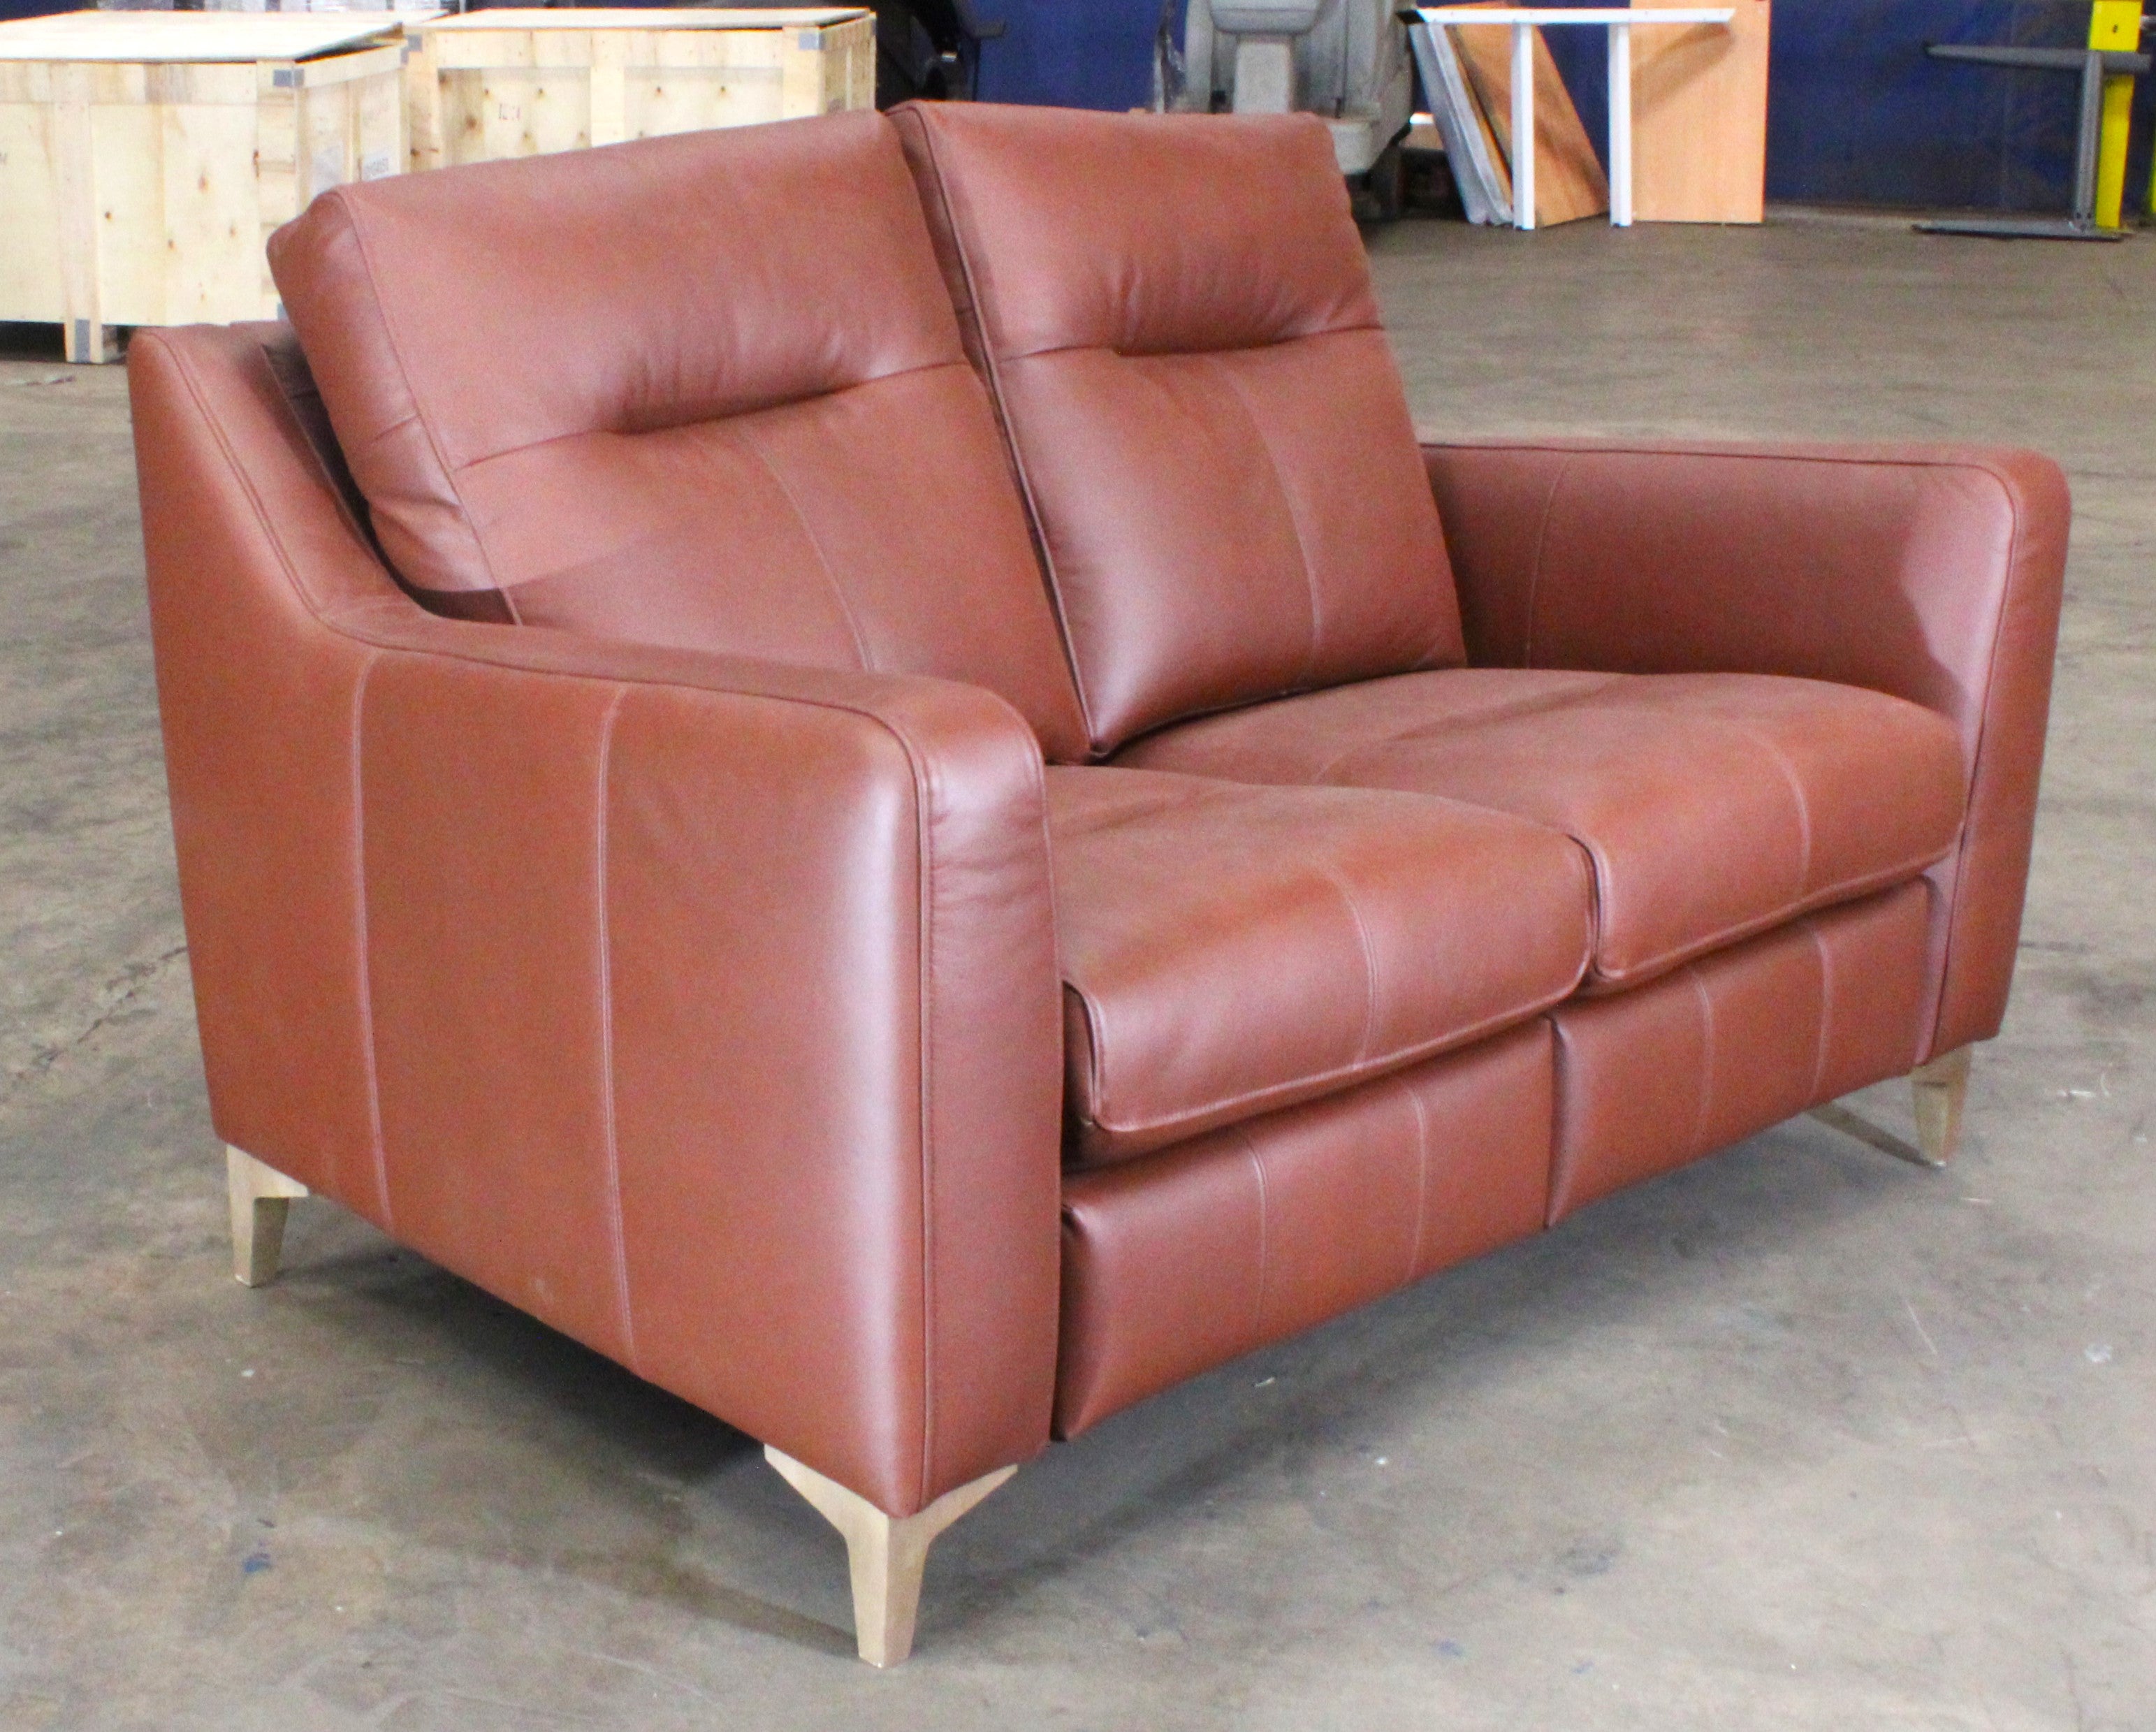 G-Plan: Arlo 2 Seater Leather Sofa - Tan - Manufacturer Return